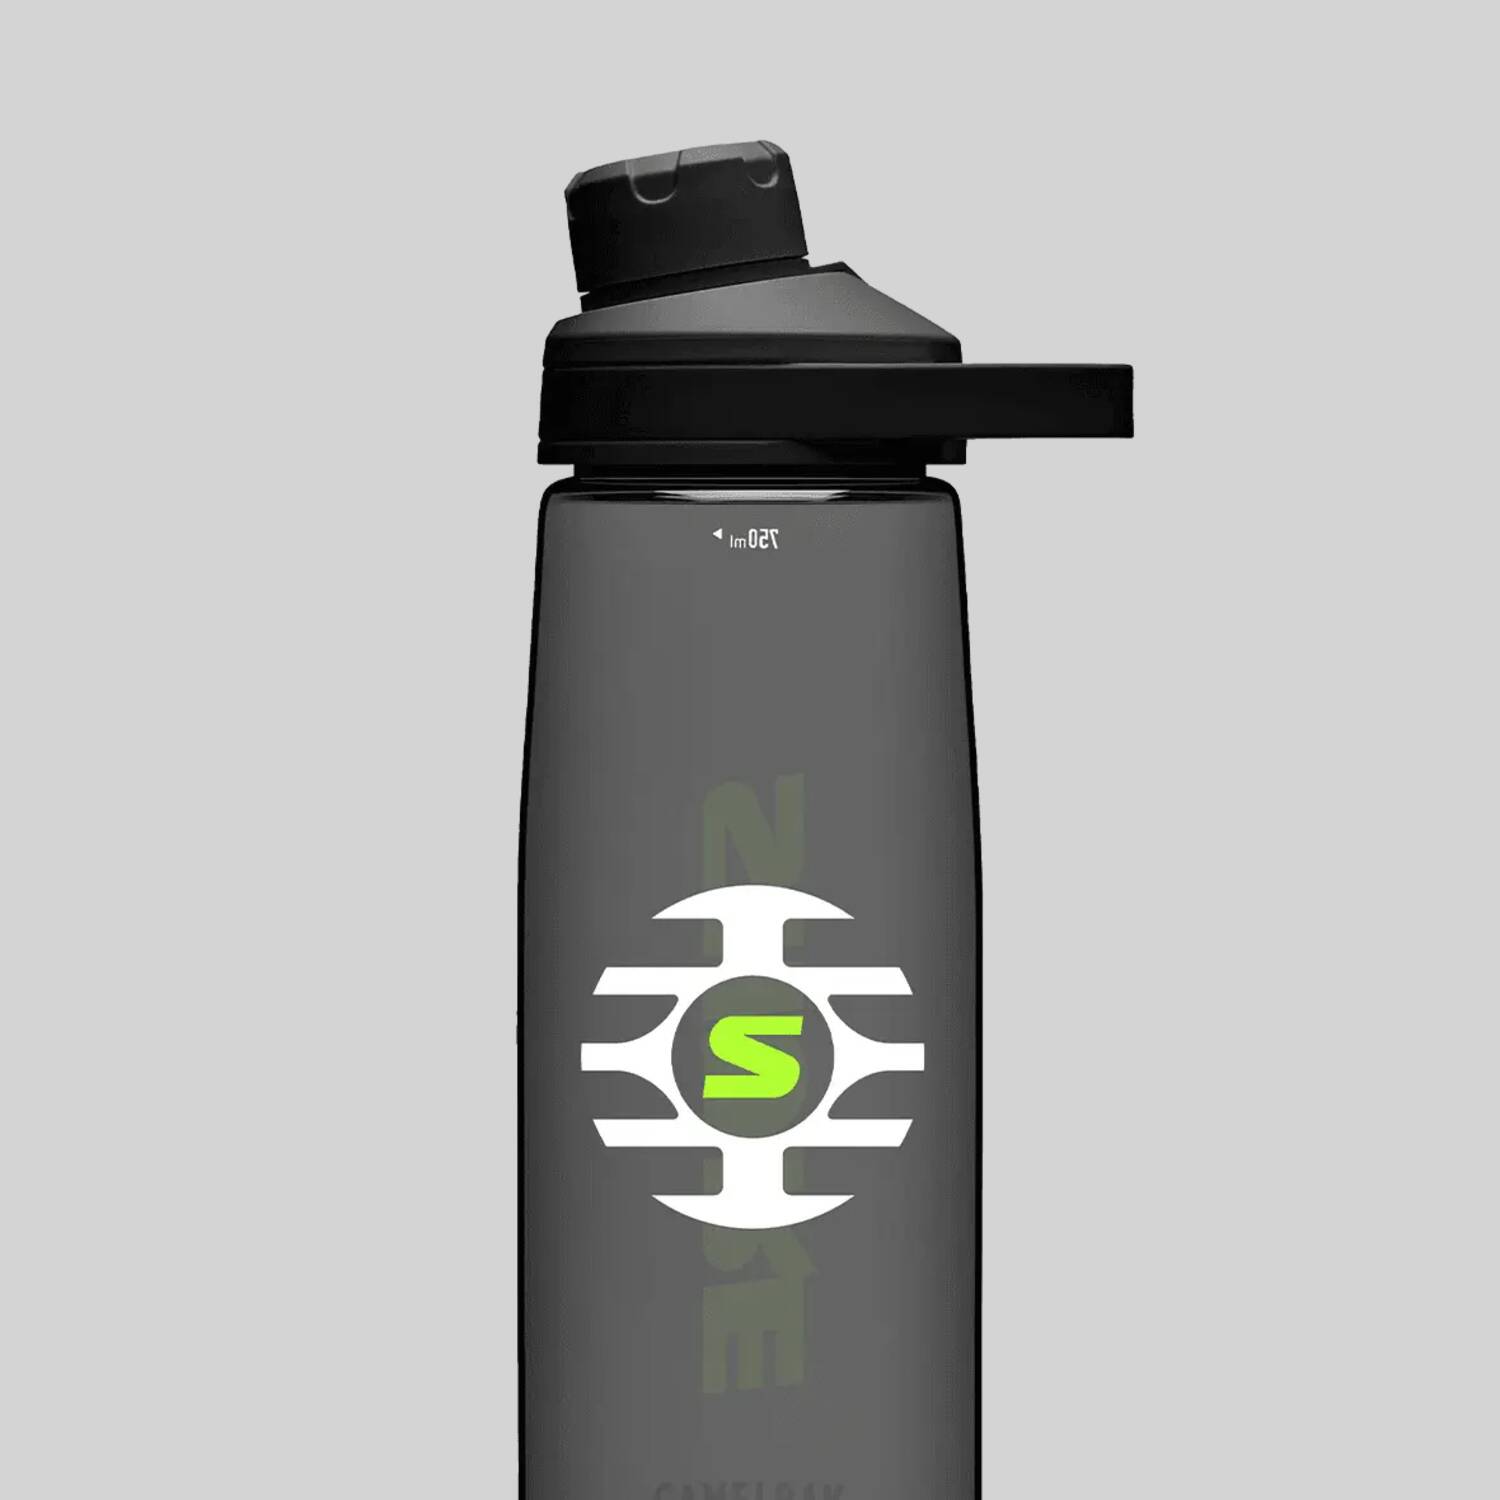 Plastic Water Bottle - Shure Branded, Camelbak 25 oz. Bottle - Shure USA